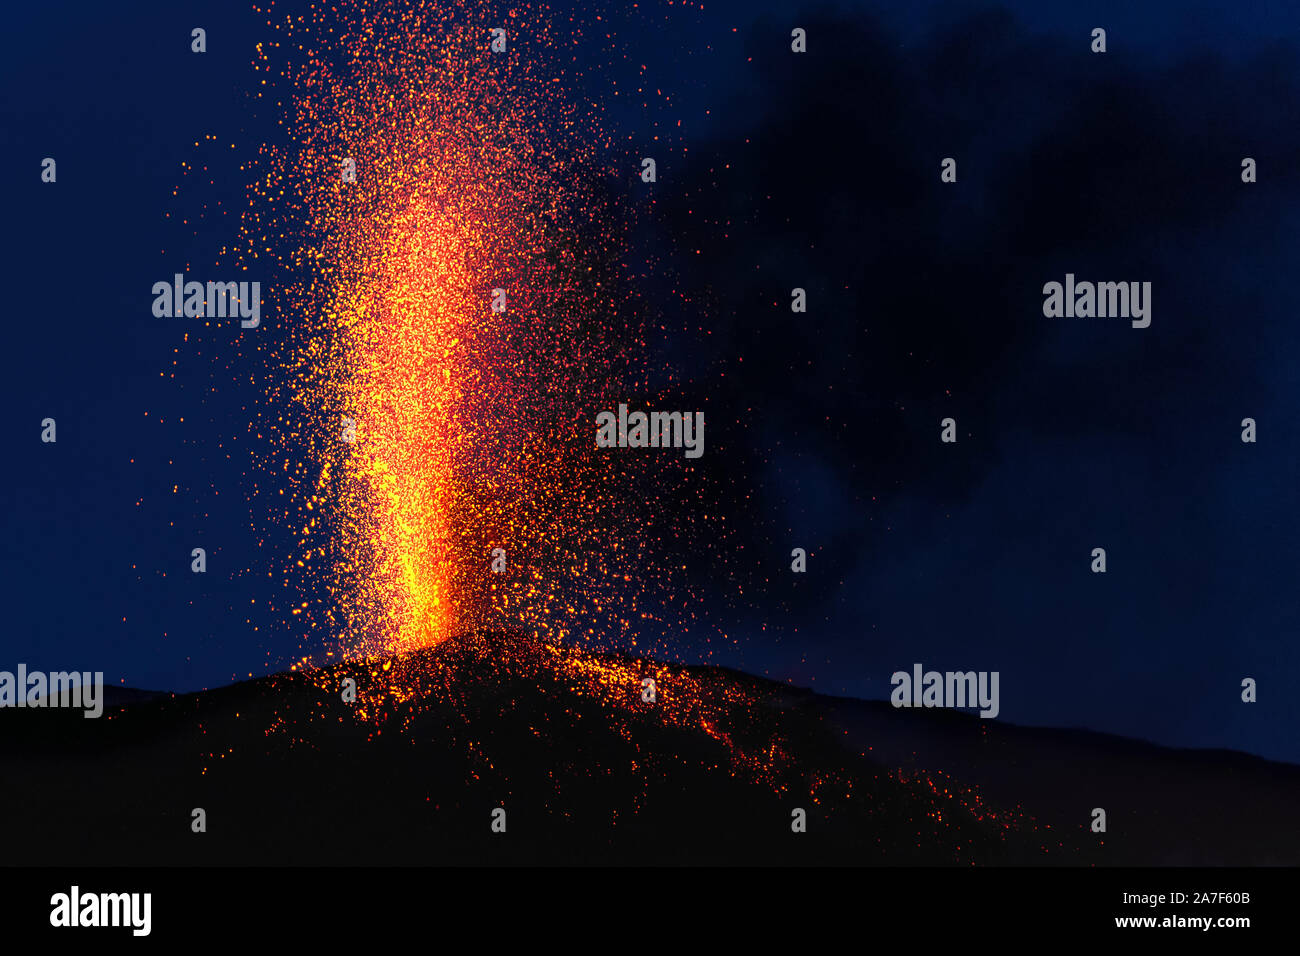 Eruzione esplosiva al tramonto in uno dei tre crateri del principio attivo del vulcano di Stromboli, isole Eolie, Italia. Foto Stock